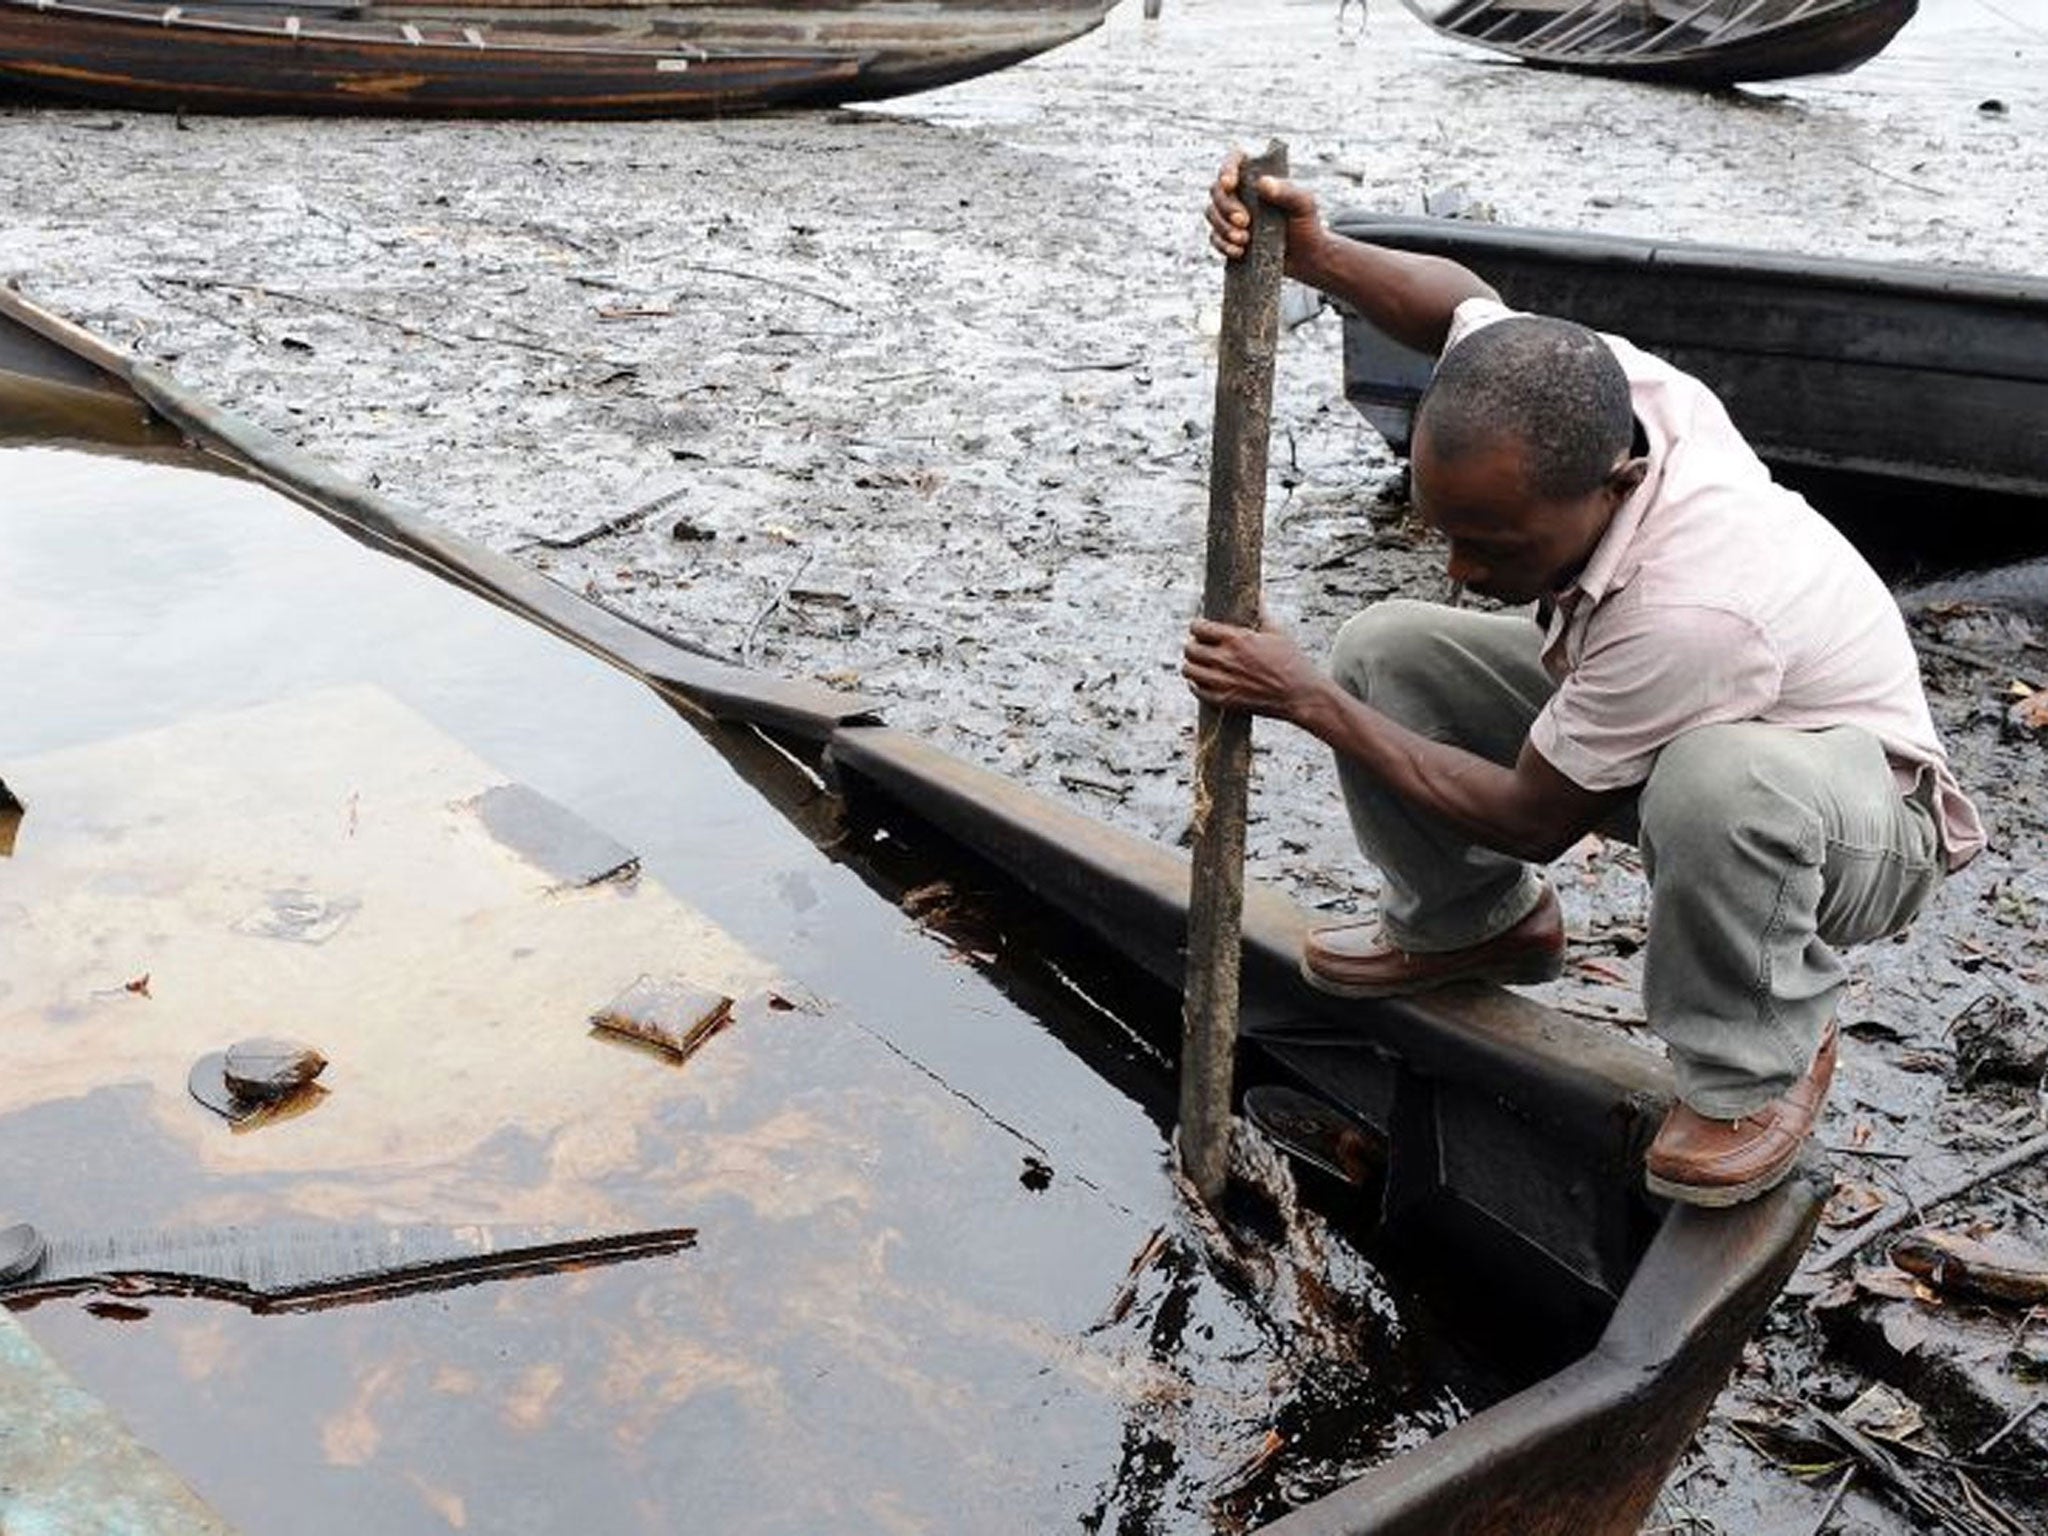 An oil-ravaged waterway in Ogoniland, Nigeria in 2011